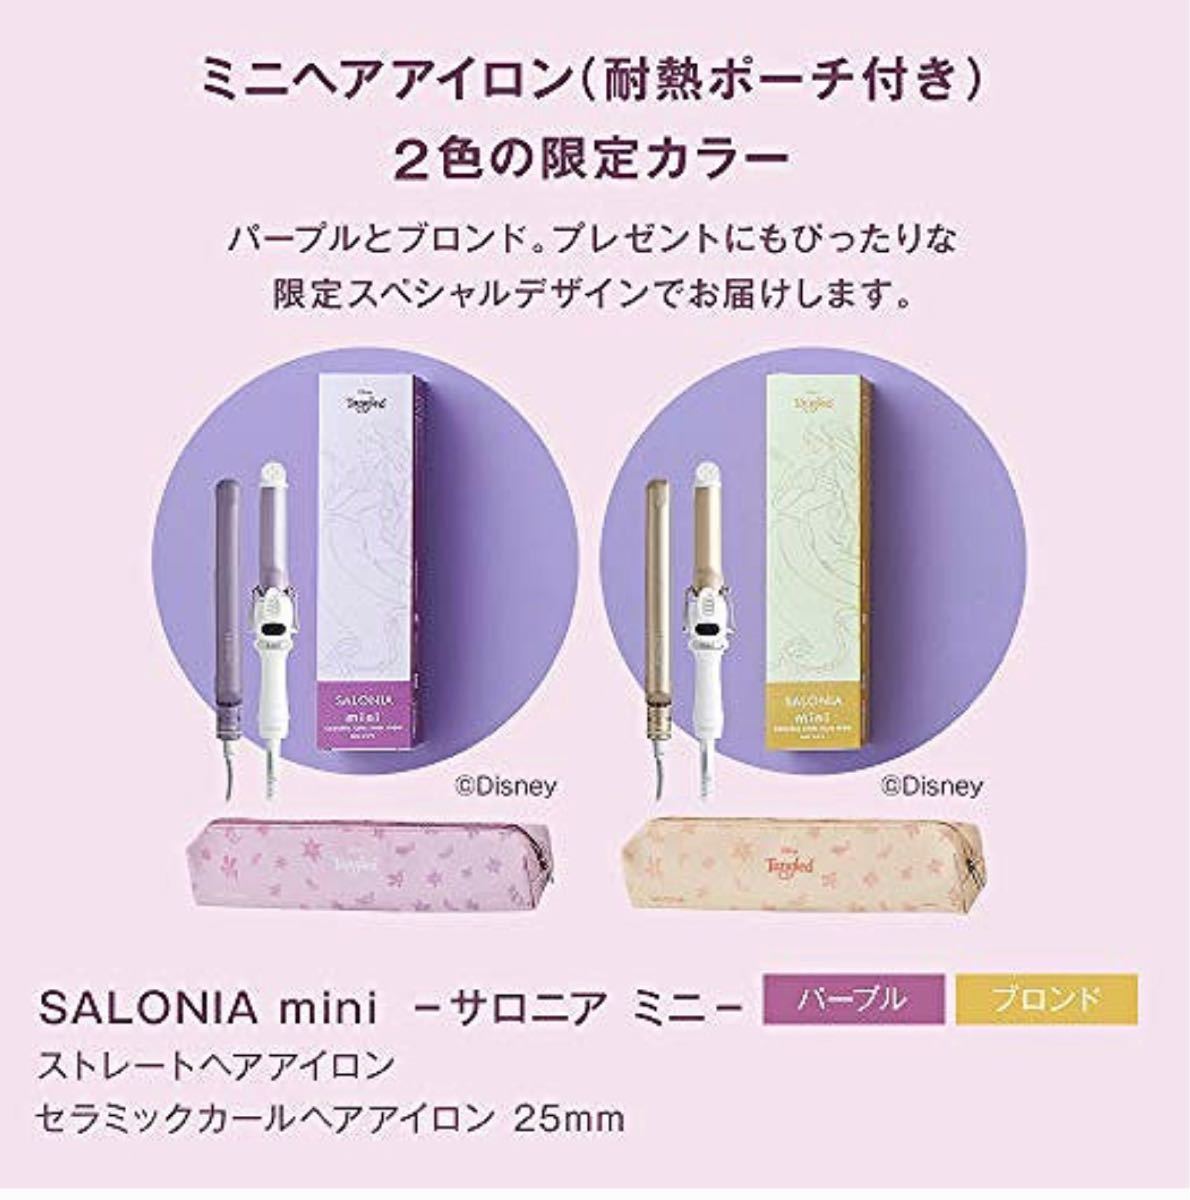 新品 サロニア SALONIA SL-011CDP ミニ セラミックカールヘアアイロン 25mm ラプンツェル パープル